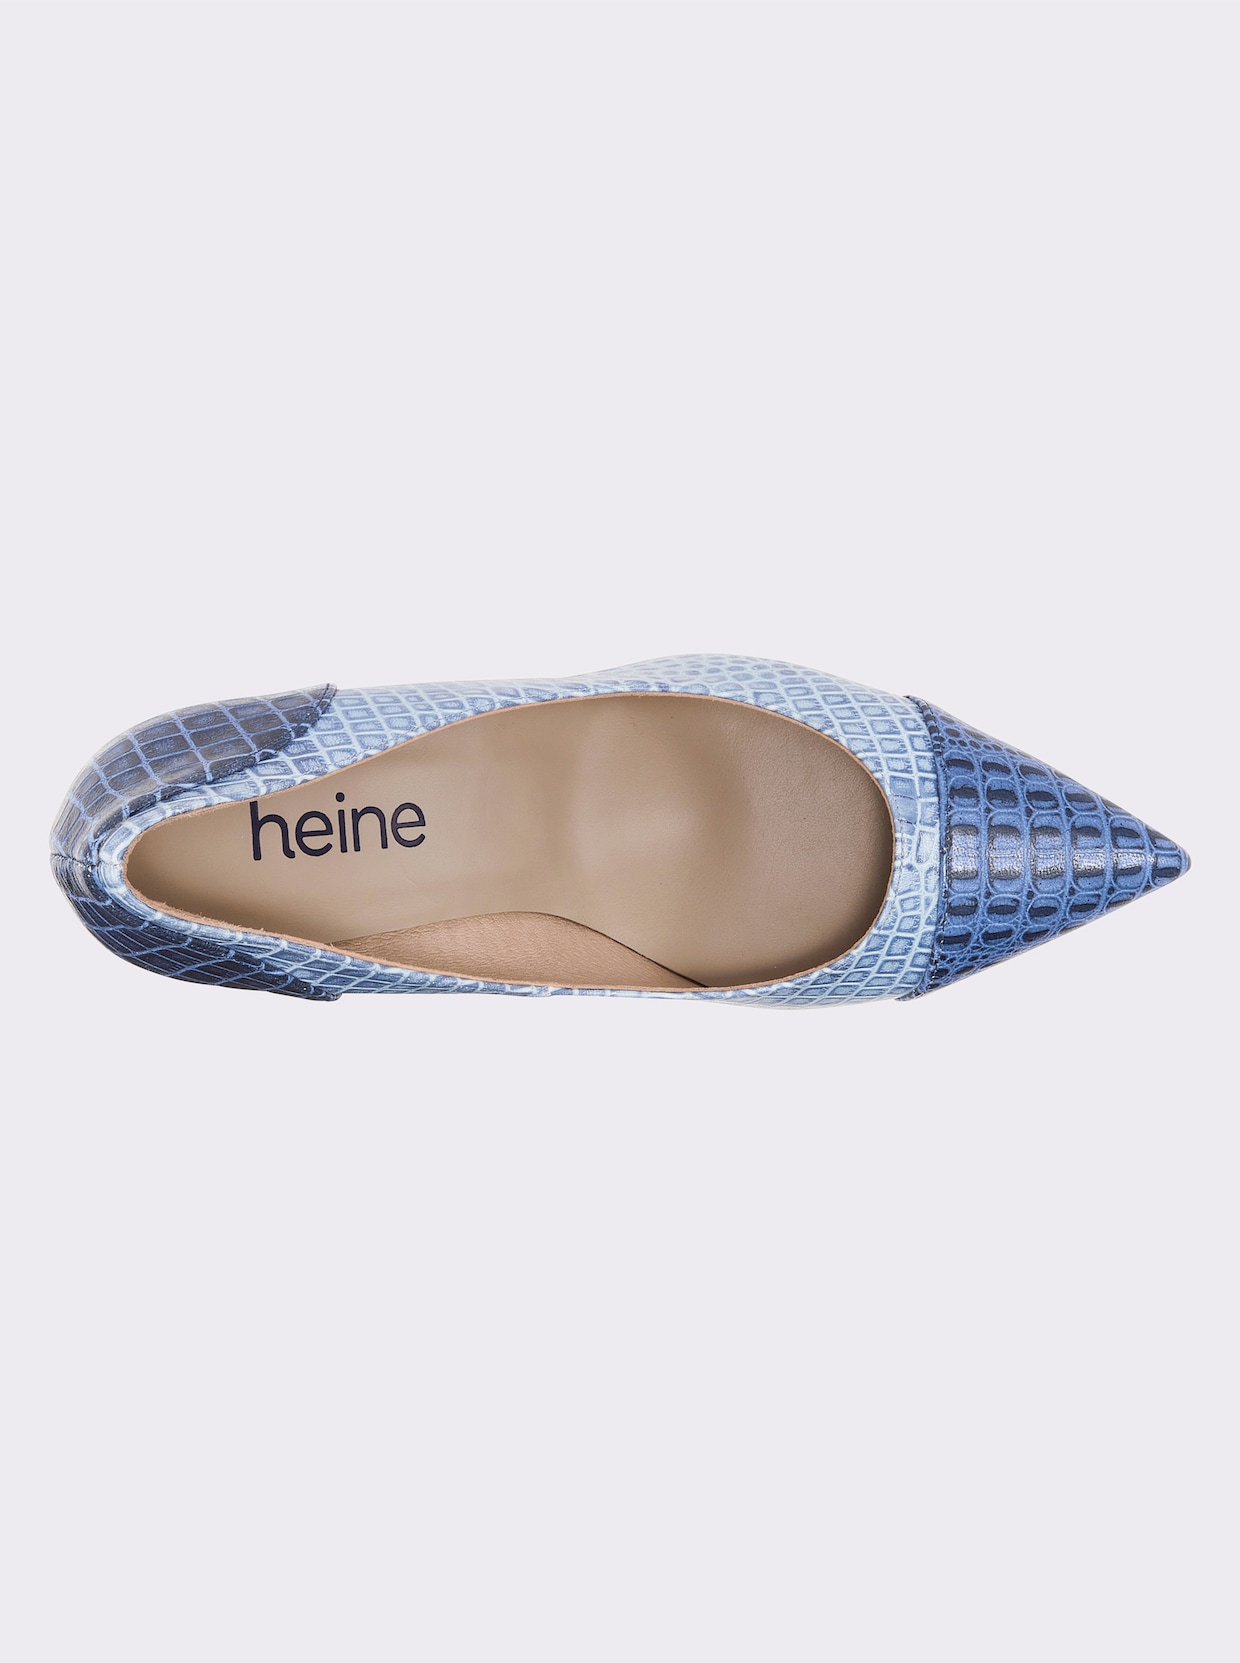 heine Pumps - hellblau-blau